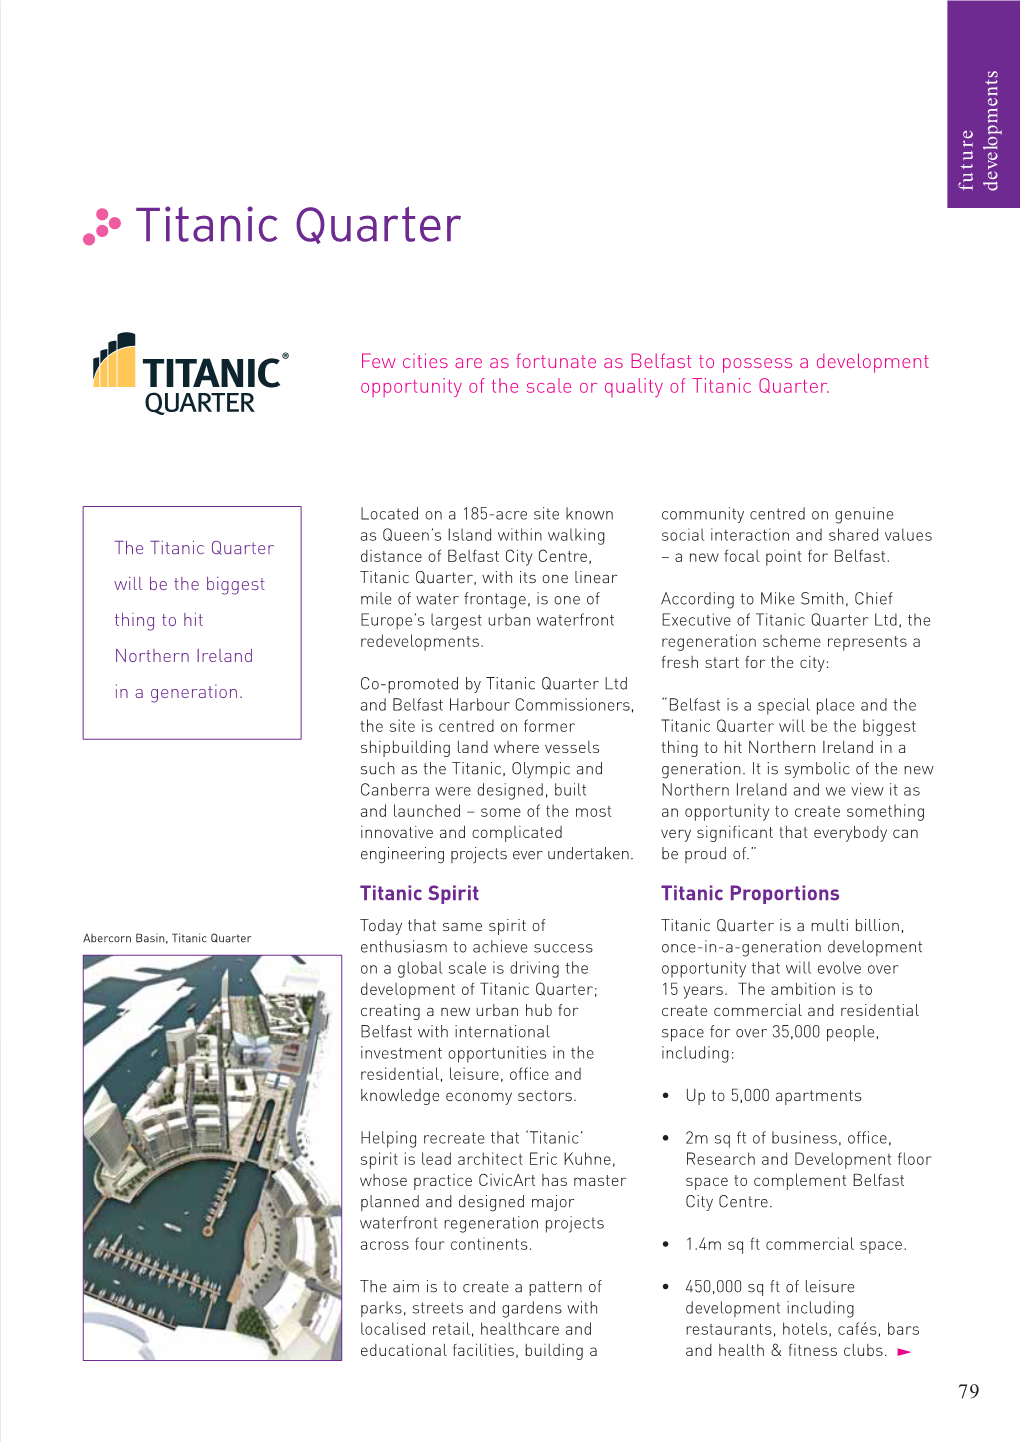 Titanic Quarter in Ageneration